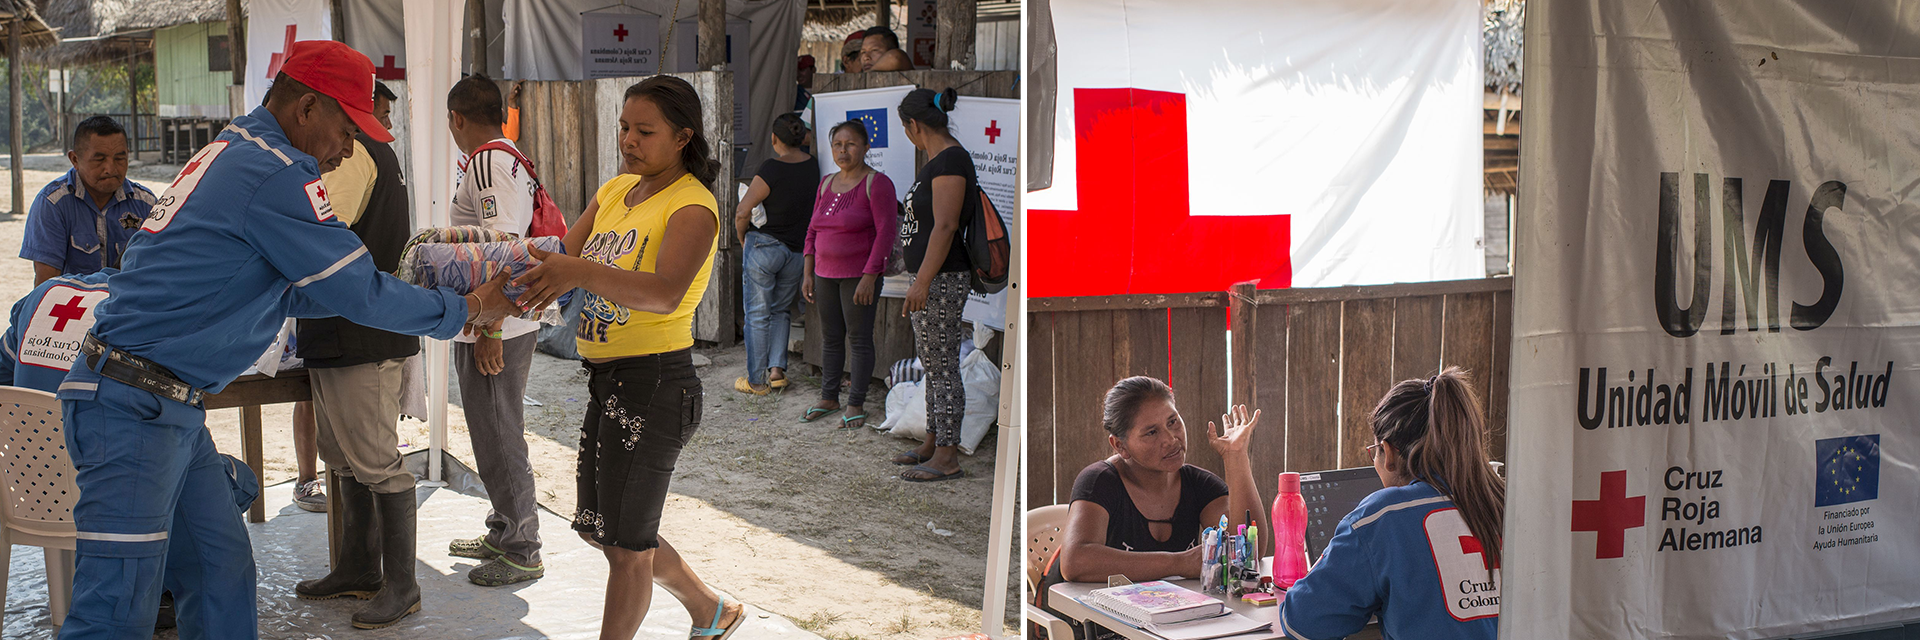 Collage: Hilfsgüterverteilung und Gespräch in mobiler Gesundheitsstation